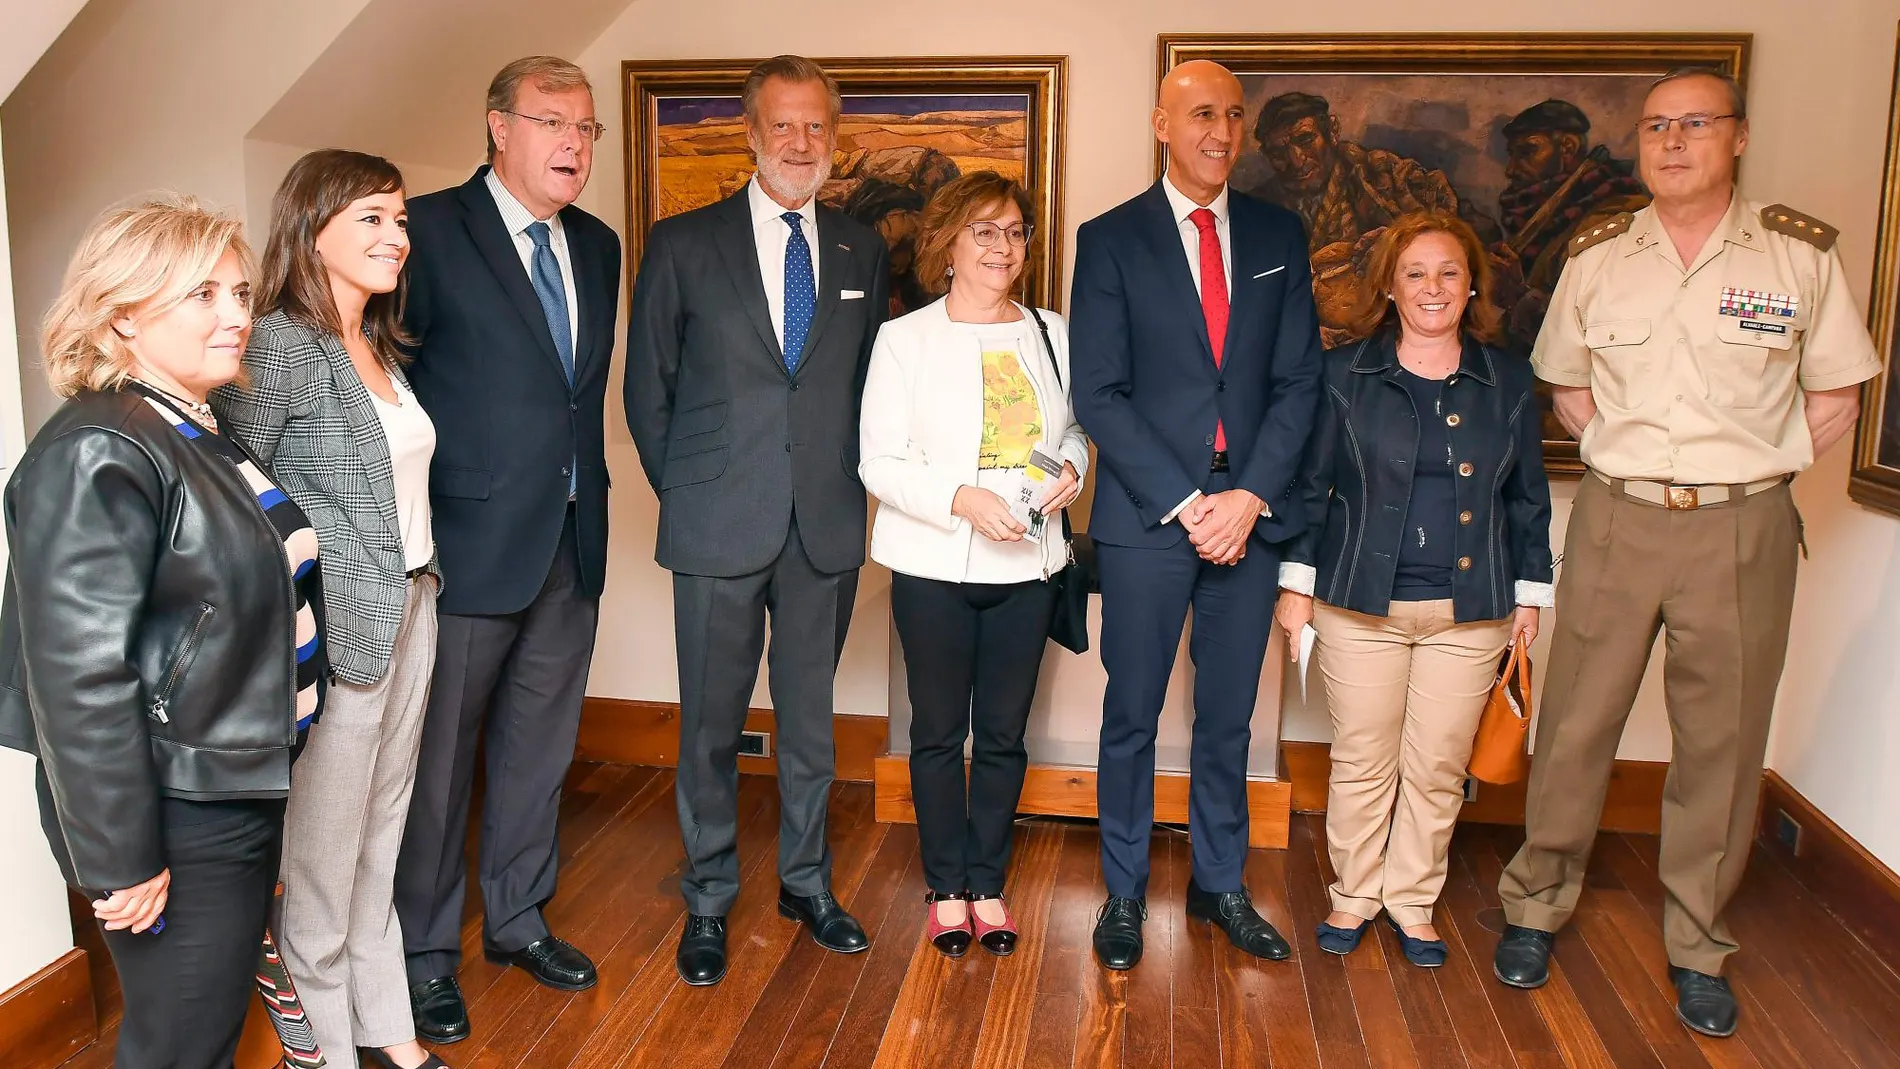 El alcalde de León, José Antonio Diez, junto a Antonio Silván, entre otros, asiste a la inauguración de las nuevas salas expositivas en el Museo Casa Gaudí Botines